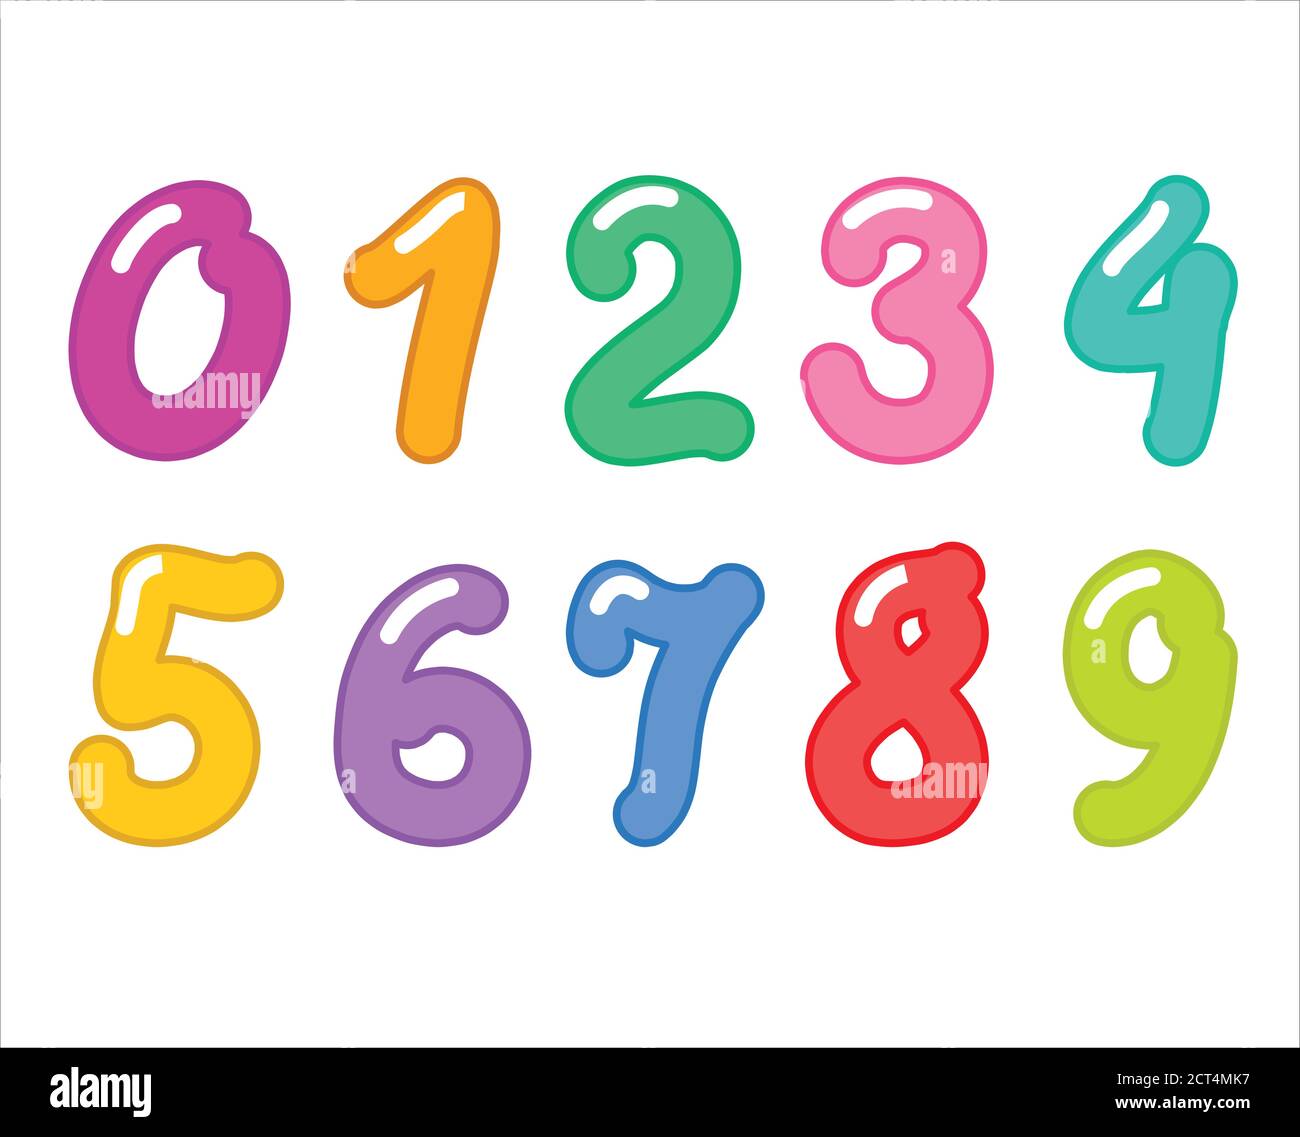 Ein Satz von Vektor-Zahlen für Kinder. Helle, farbige Zahlen 1 2 3 4 5 6 7 8 9 0. Für eine Karikatur, Kalender, Schule Banner. Vektorgrafik. Stock Vektor